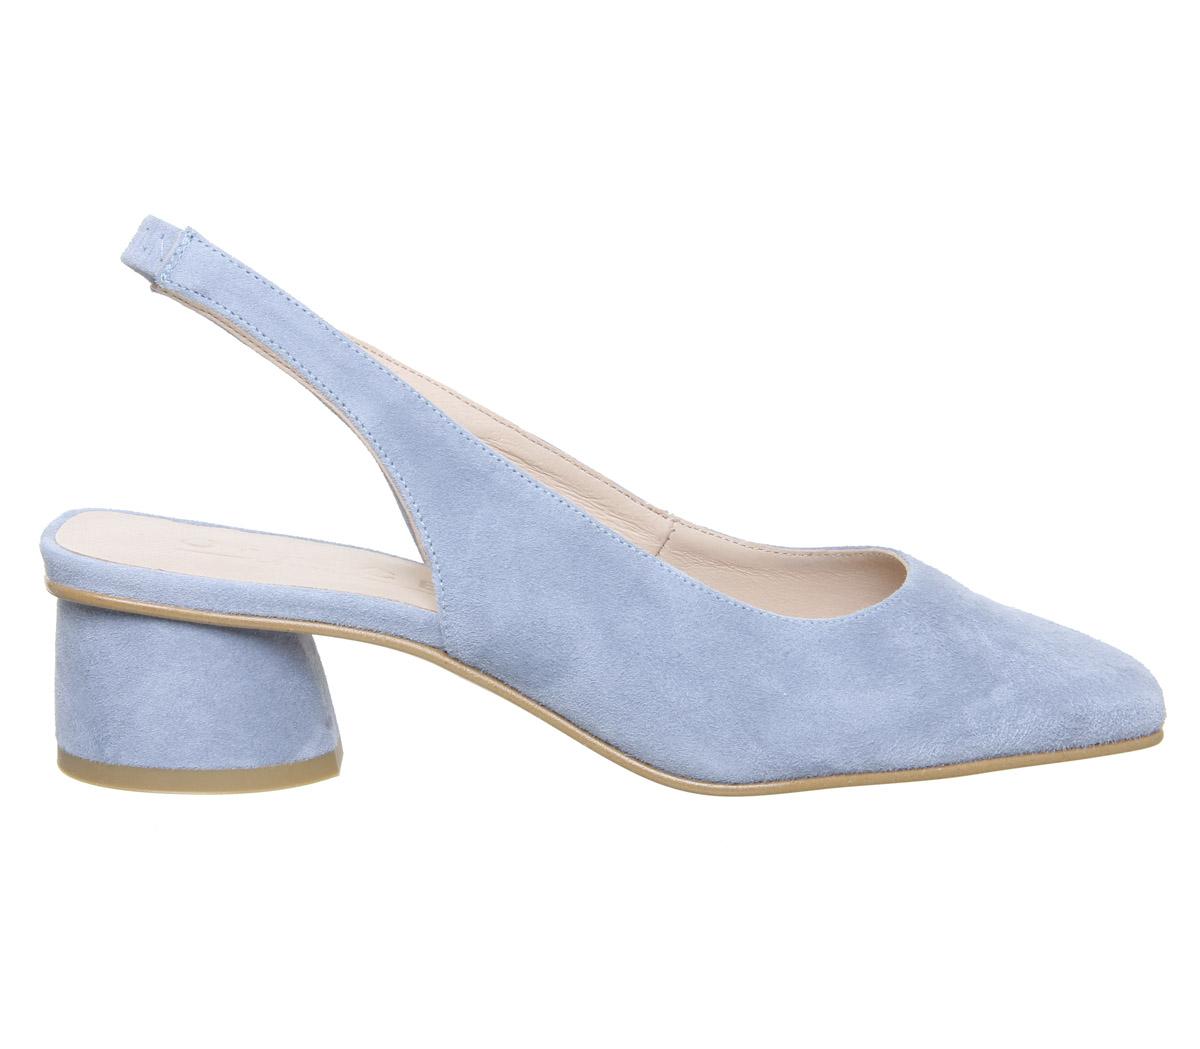 pale blue suede shoes